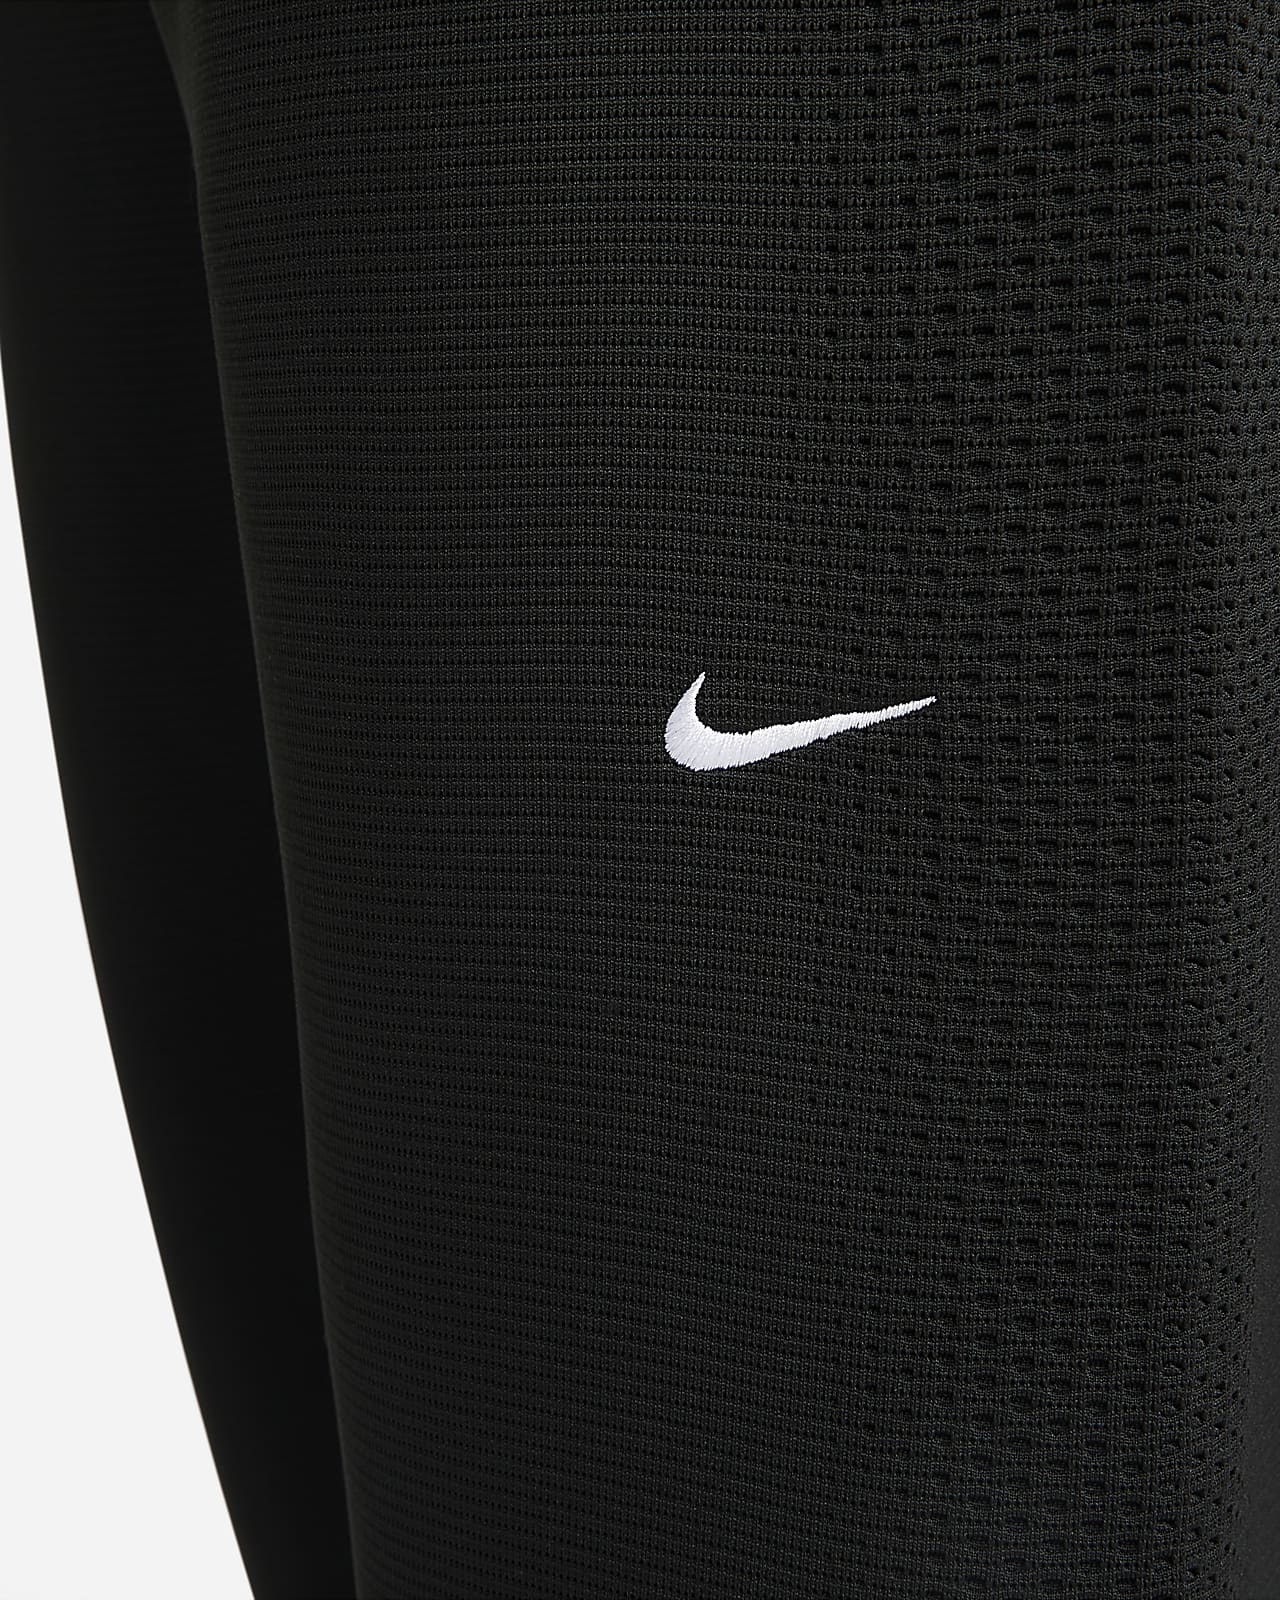 Nike A.P.S. Pantalón entrenamiento de tejido Fleece - Hombre. Nike ES